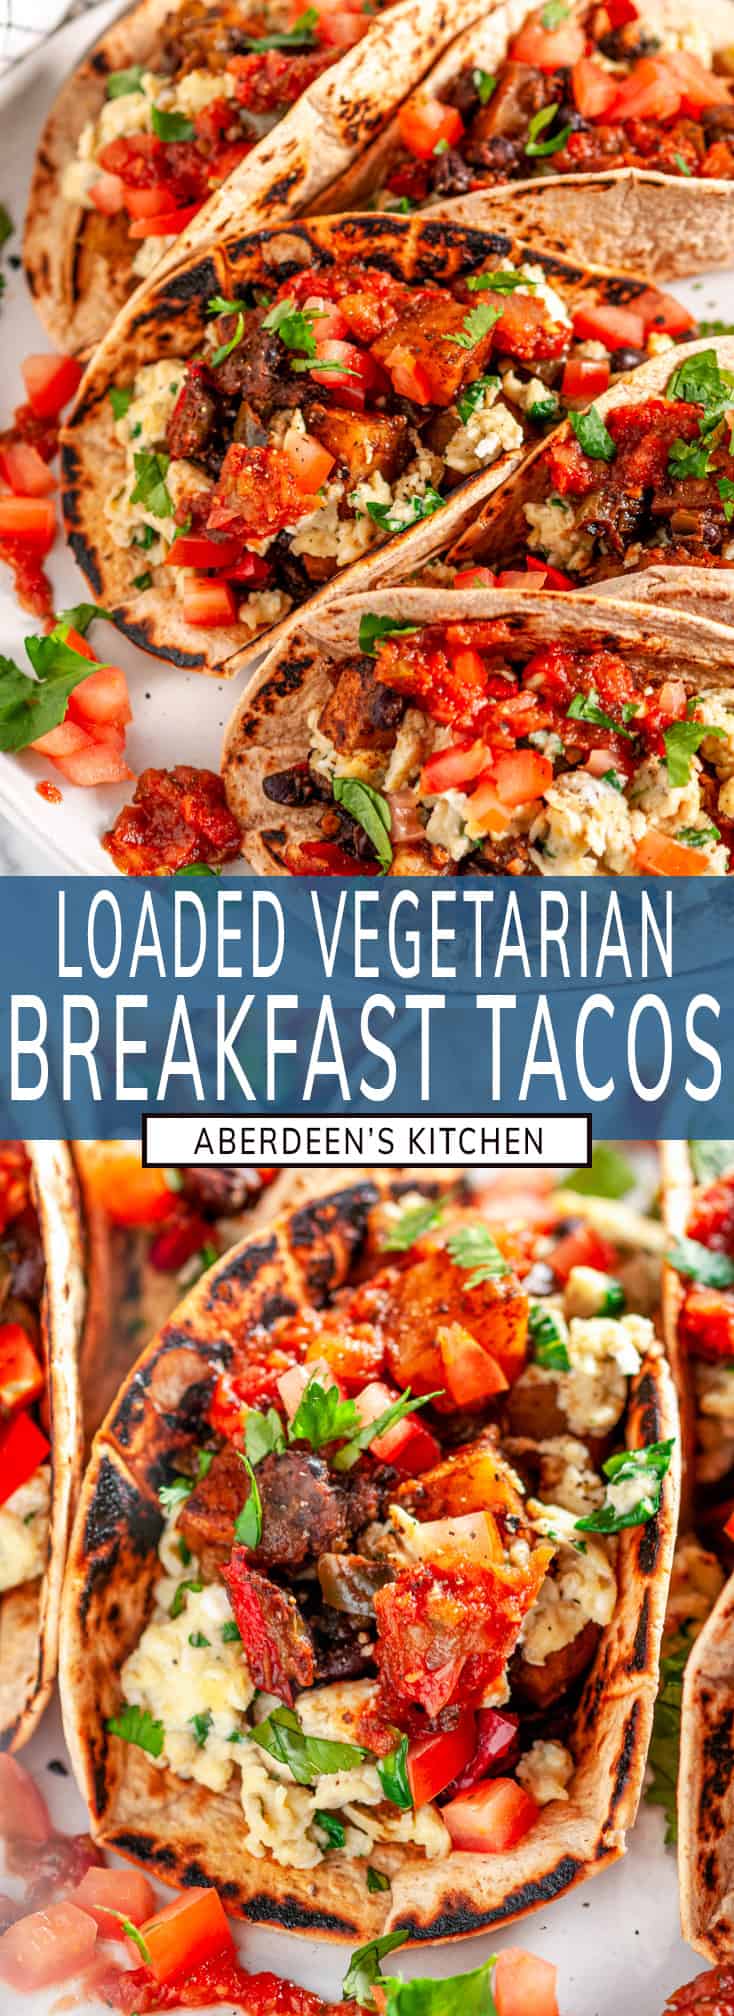 Loaded Vegetarian Breakfast Tacos - Aberdeen's Kitchen